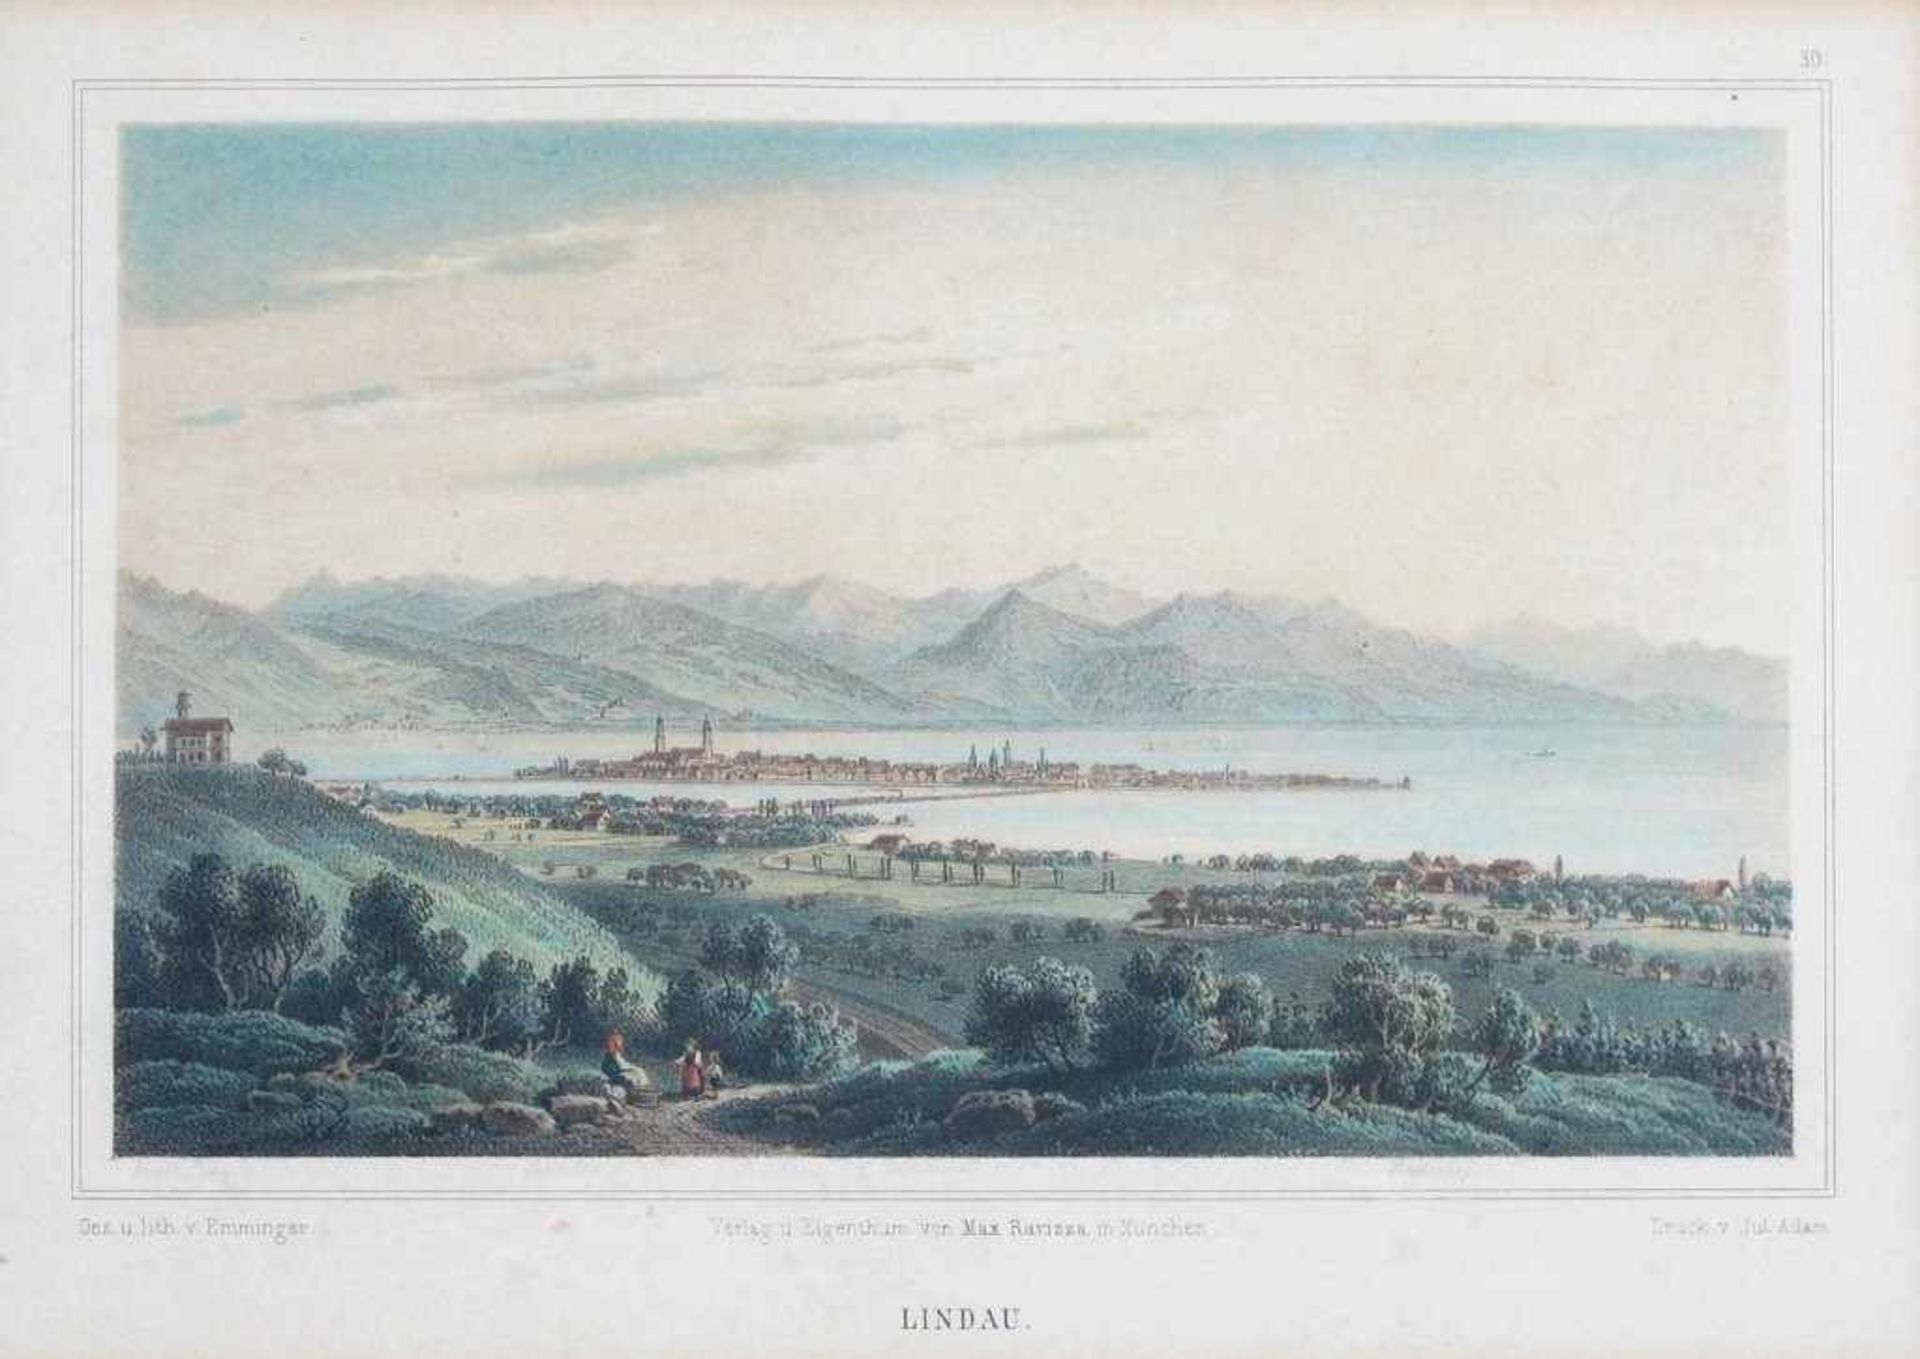 "Lindau". Blick auf die Insel vor Gebirgshintergrund, links das Hoyerbergschlössle. Lithographie von